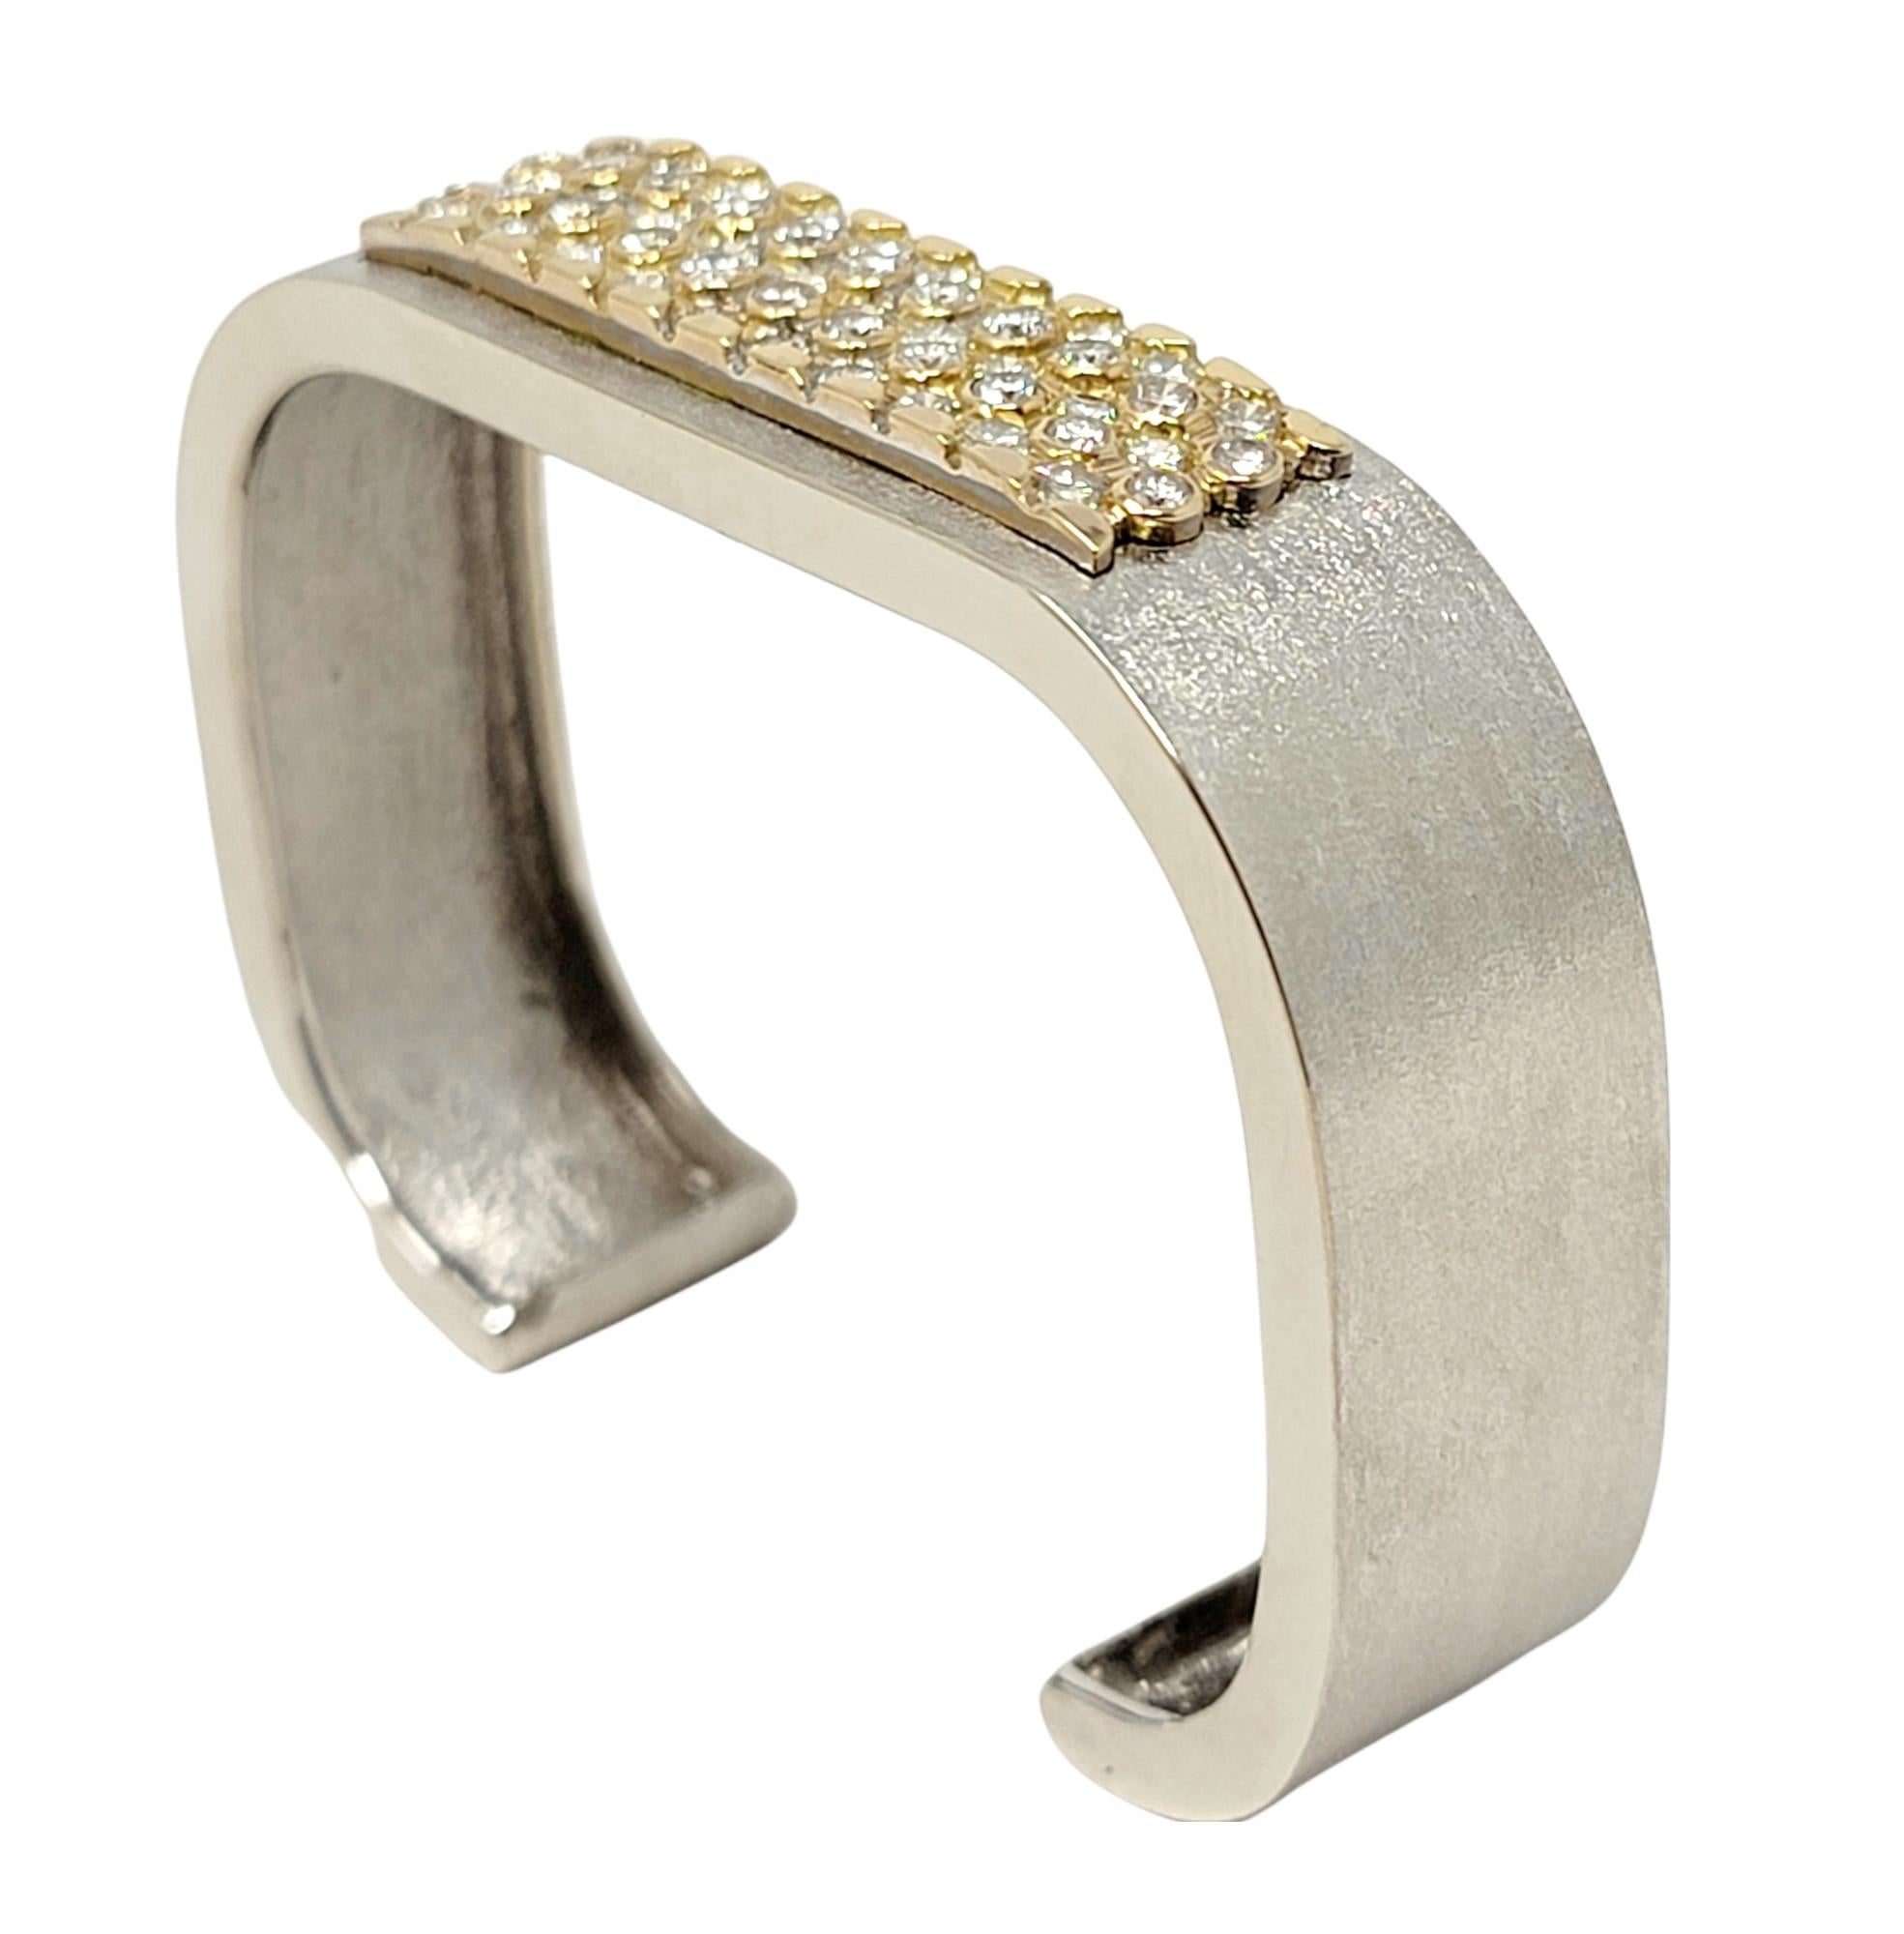 Atemberaubendes, modernes Diamantarmband mit Manschette schimmert wunderschön am Handgelenk. Dieses atemberaubende Stück hat ein leicht quadratisches Design mit einer modernen gebürsteten Goldoberfläche. Die 52 glitzernden, runden Brillanten sind in